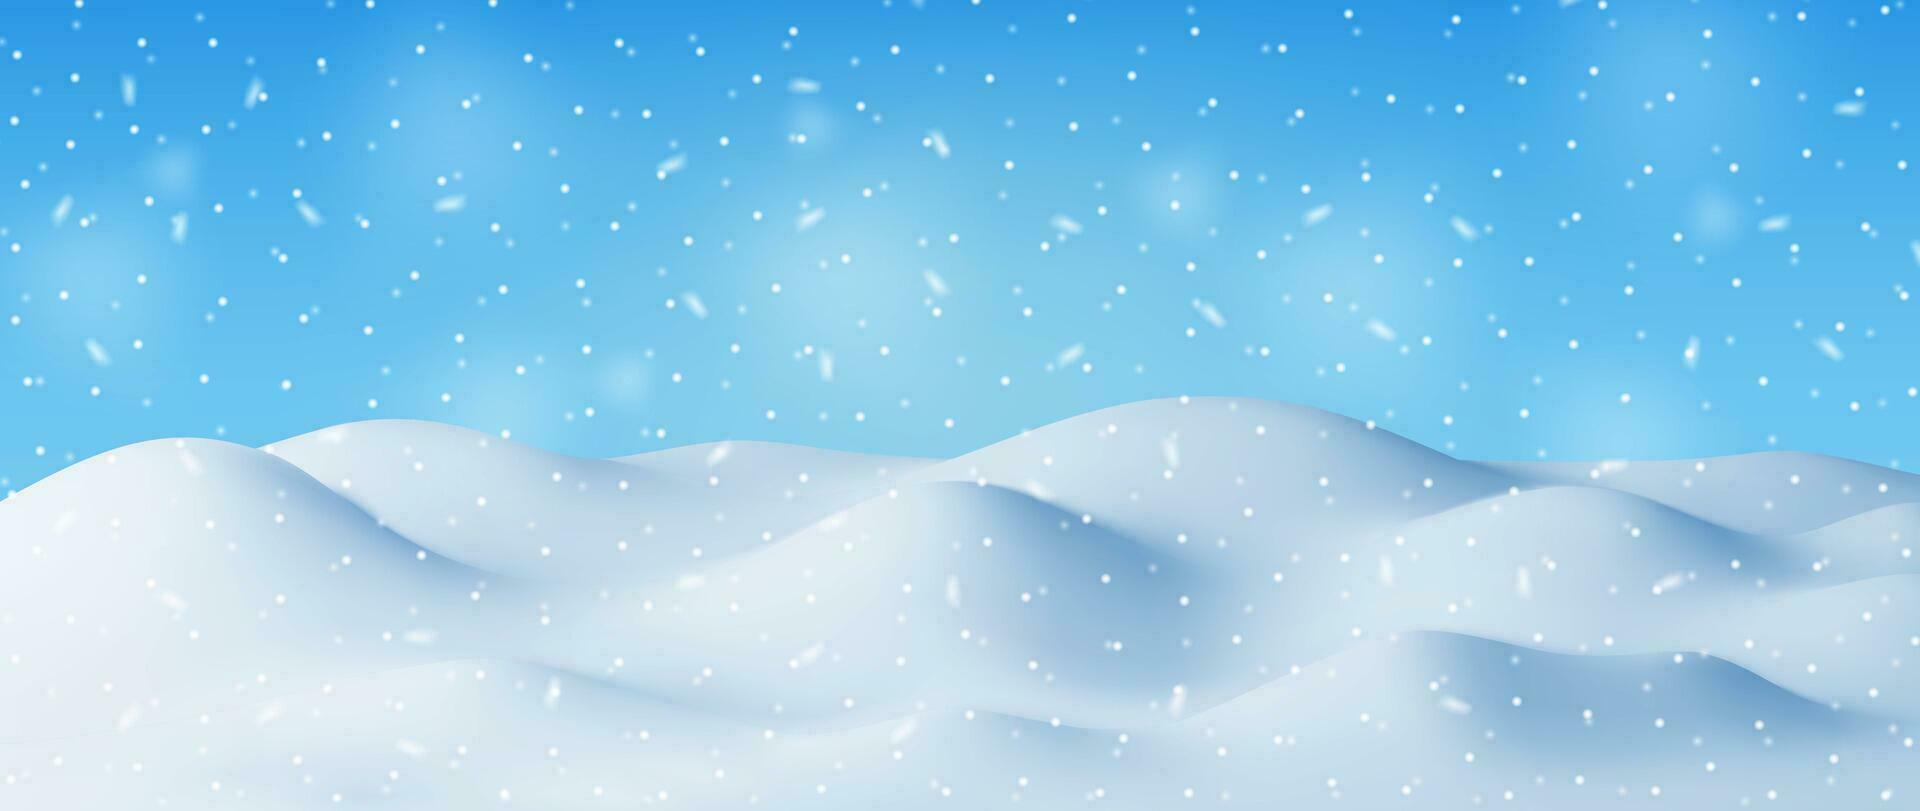 3d vinter- landskap med snödrivor och snö. framställa jul snö driver på blå himmel bakgrund. vinter- snö jord, snödriva hög, is lager. realistisk vektor illustration